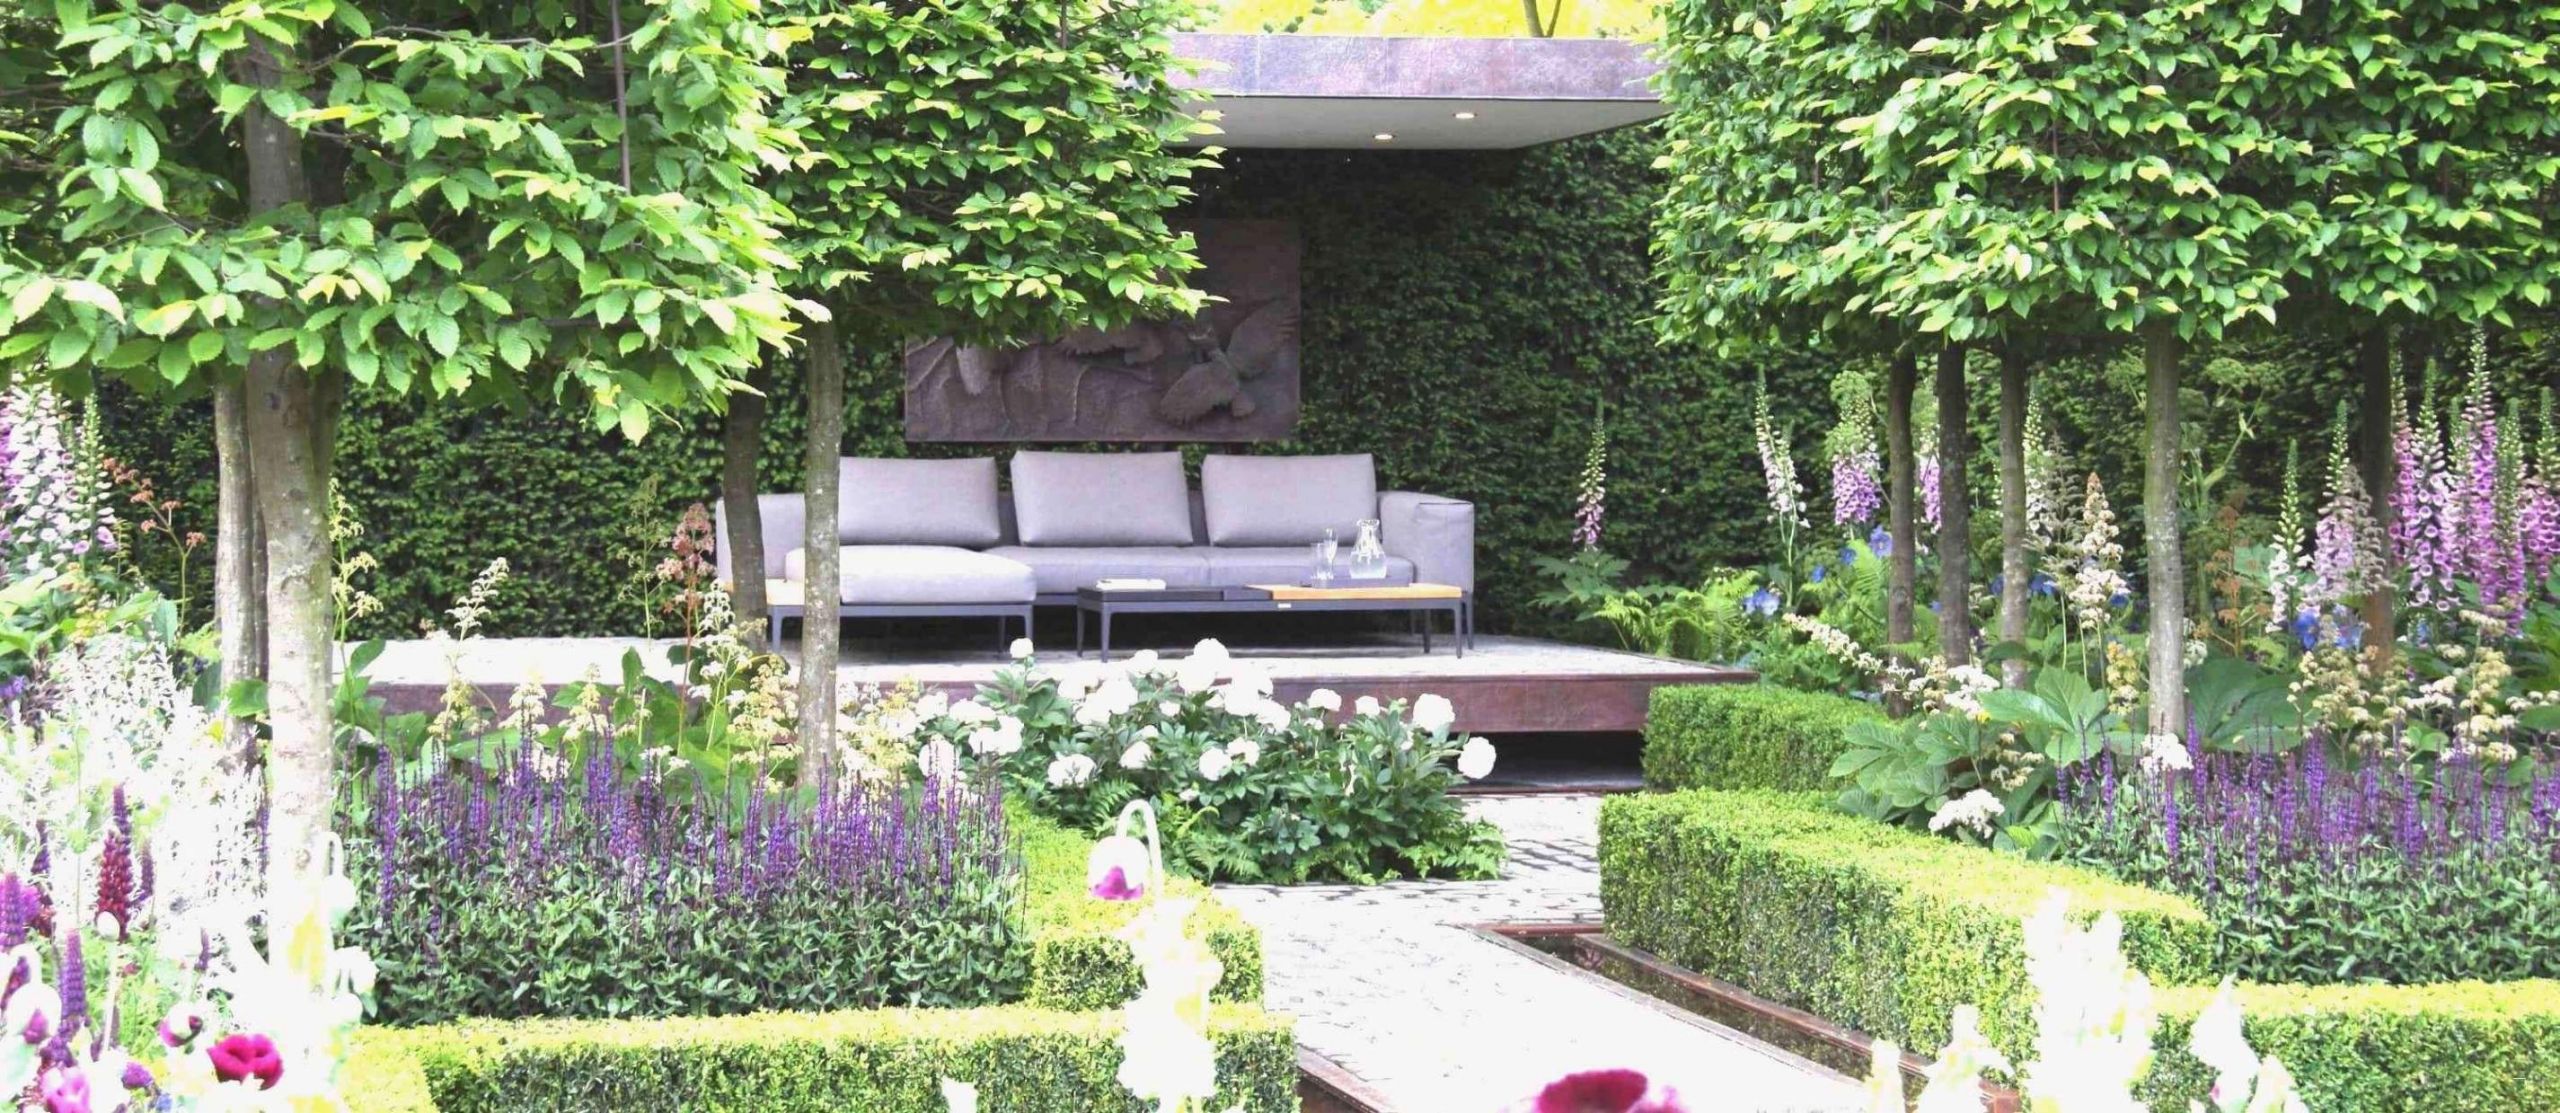 Schöne Gärten Bilder Genial 25 Reizend Gartengestaltung Für Kleine Gärten Genial